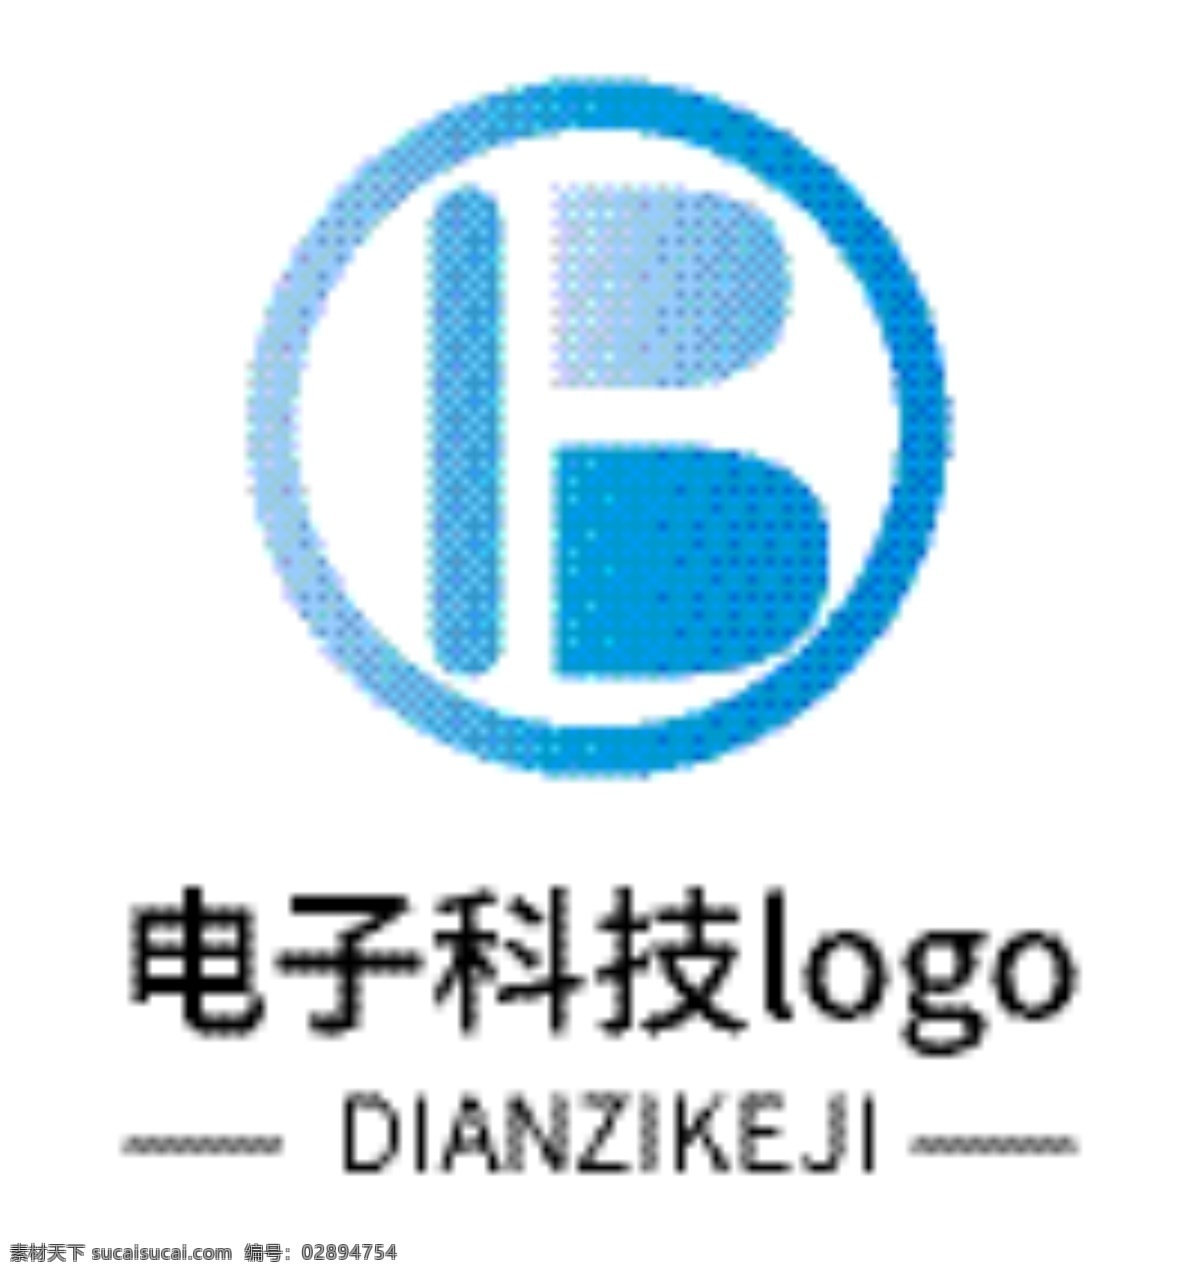 电子 科技 logo 电子logo 科技logo 蓝色 渐变 矢量logo b f logo设计